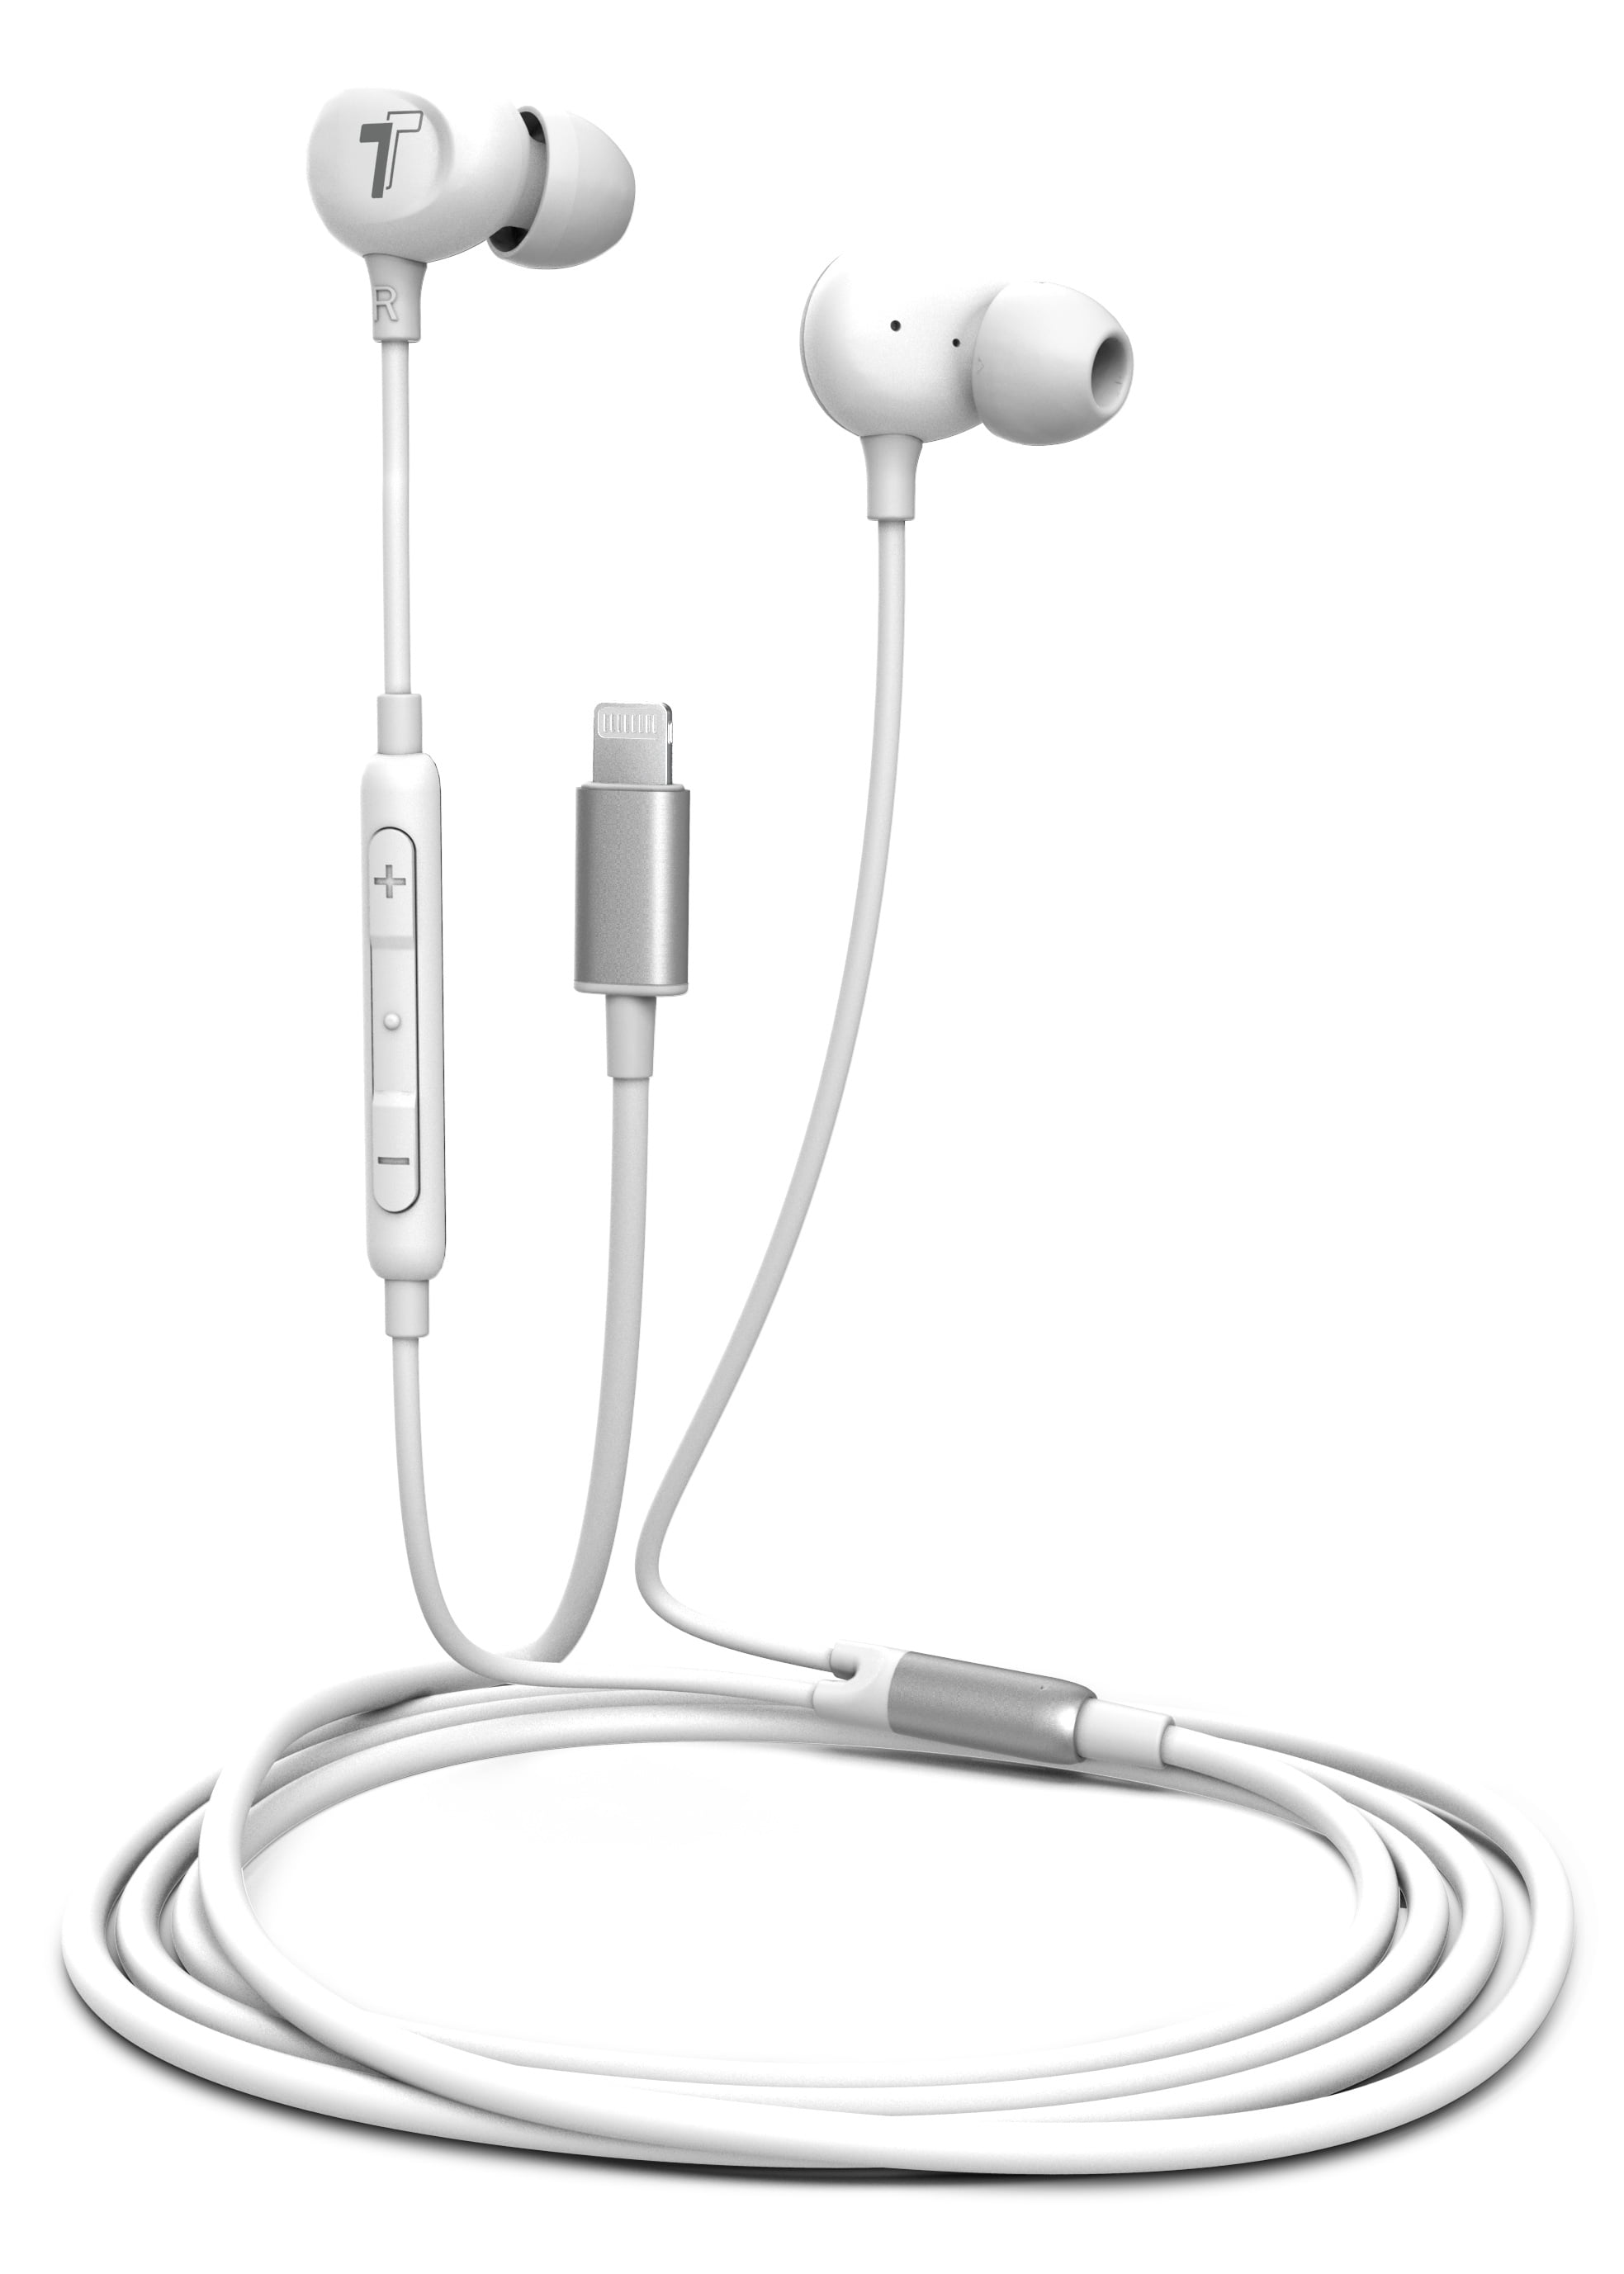 Universal Bluetooh Earphone Headset Kopfhörer mit USB für iPhone XS XR XS MAX